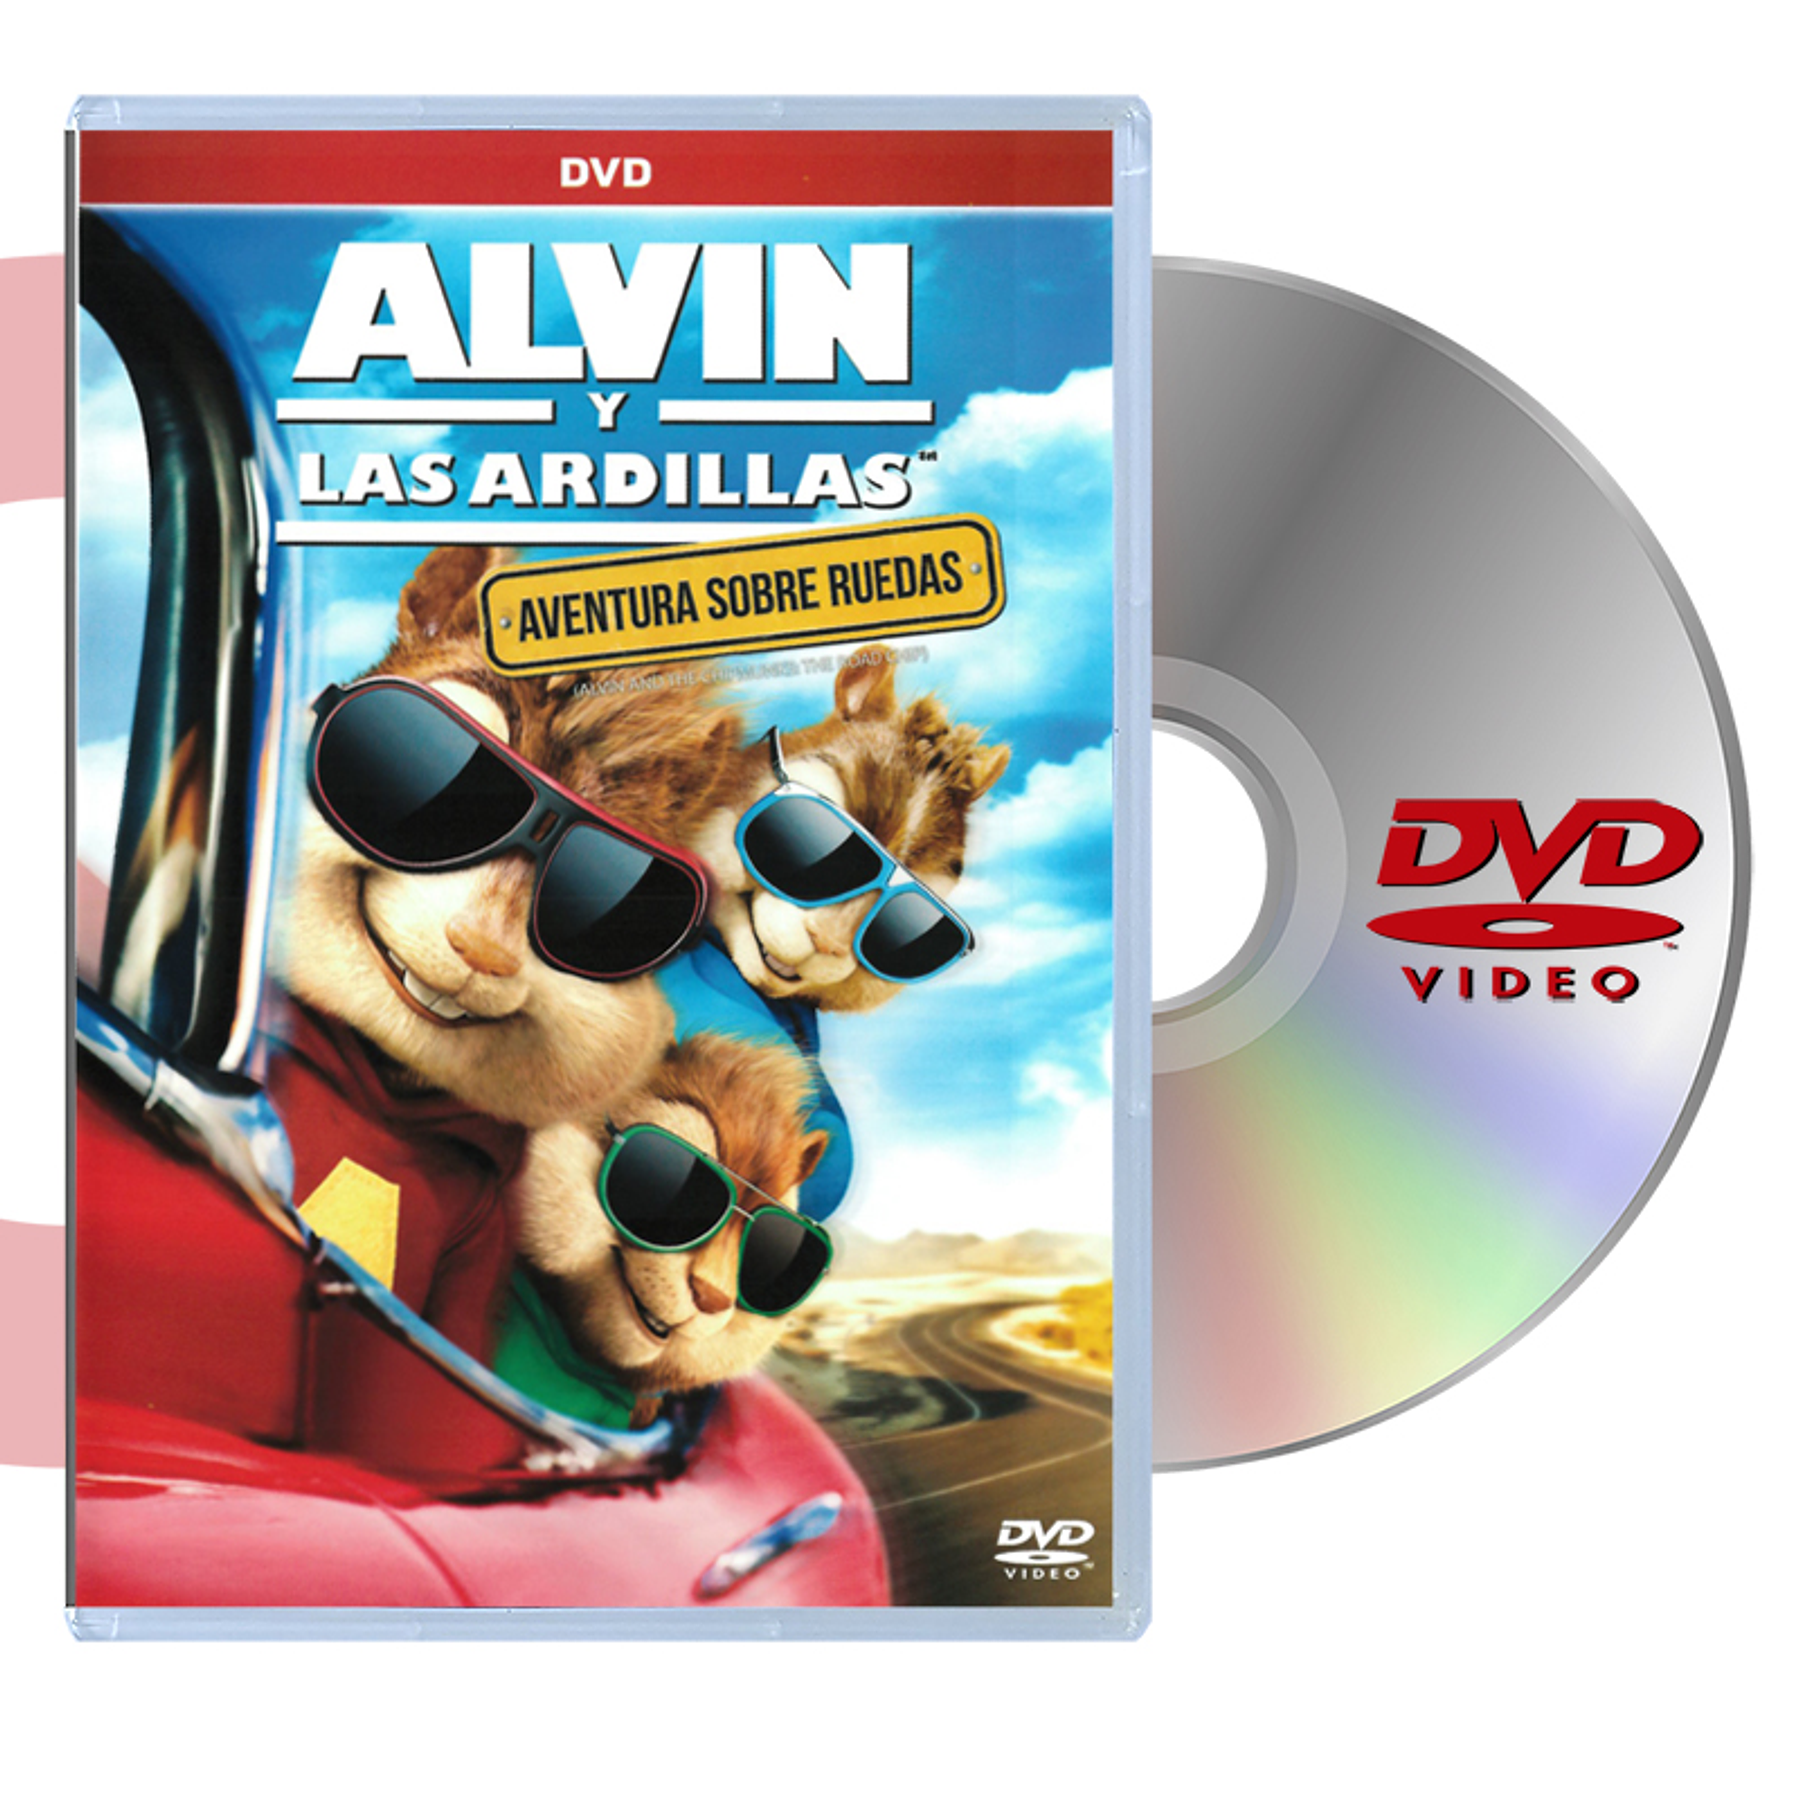 DVD ALVIN Y LAS ARDILLAS AVENTURA SOBRE RUEDAS